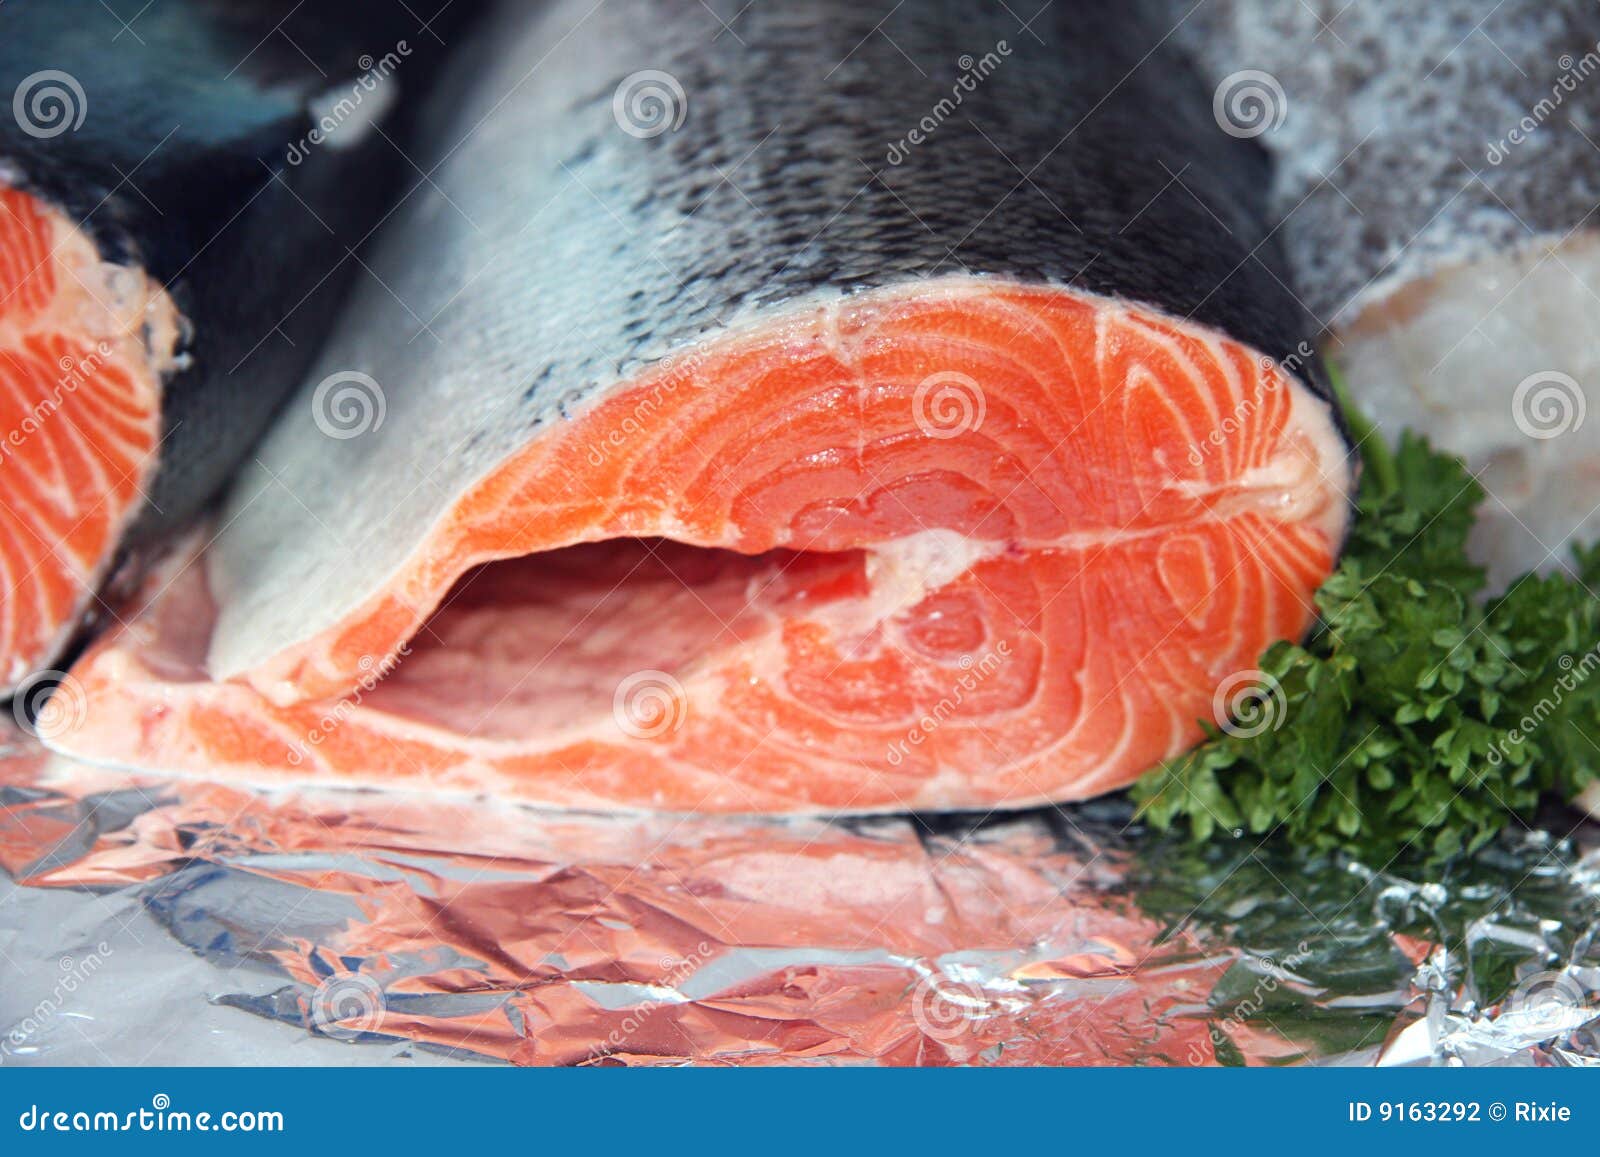 香煎阿拉斯加红鲑鱼~~sockeye salmon怎么做_香煎阿拉斯加红鲑鱼~~sockeye salmon的做法_Angiecharm_豆果美食